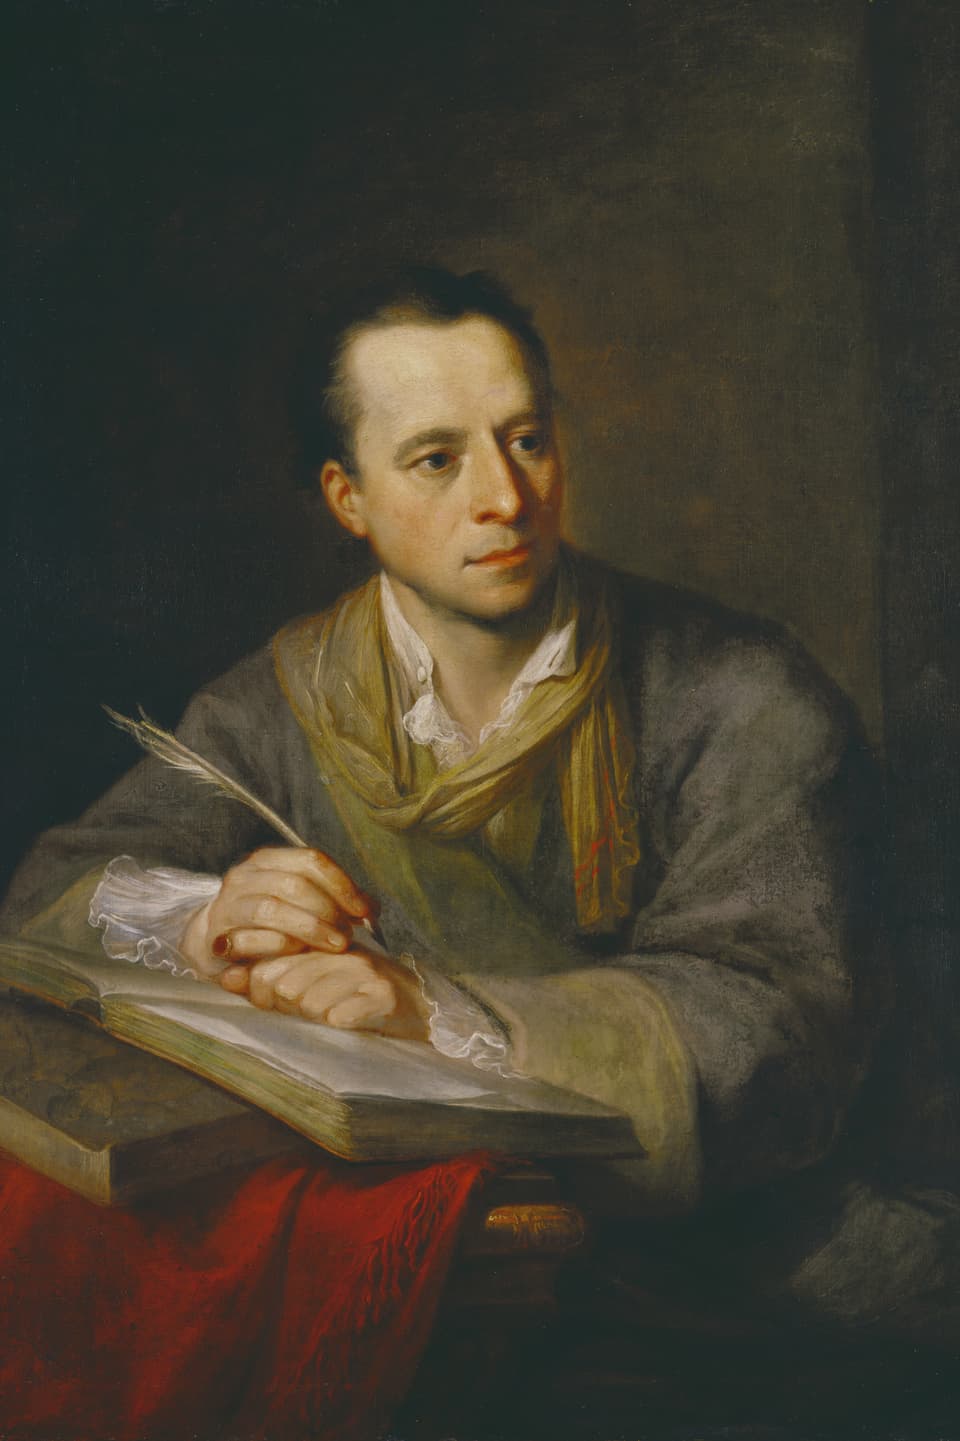 Ölgemälde: Portrait eines Mannes. Vor ihm liegt ein Buch, in seiner Hand hält er eine Schreibfeder.